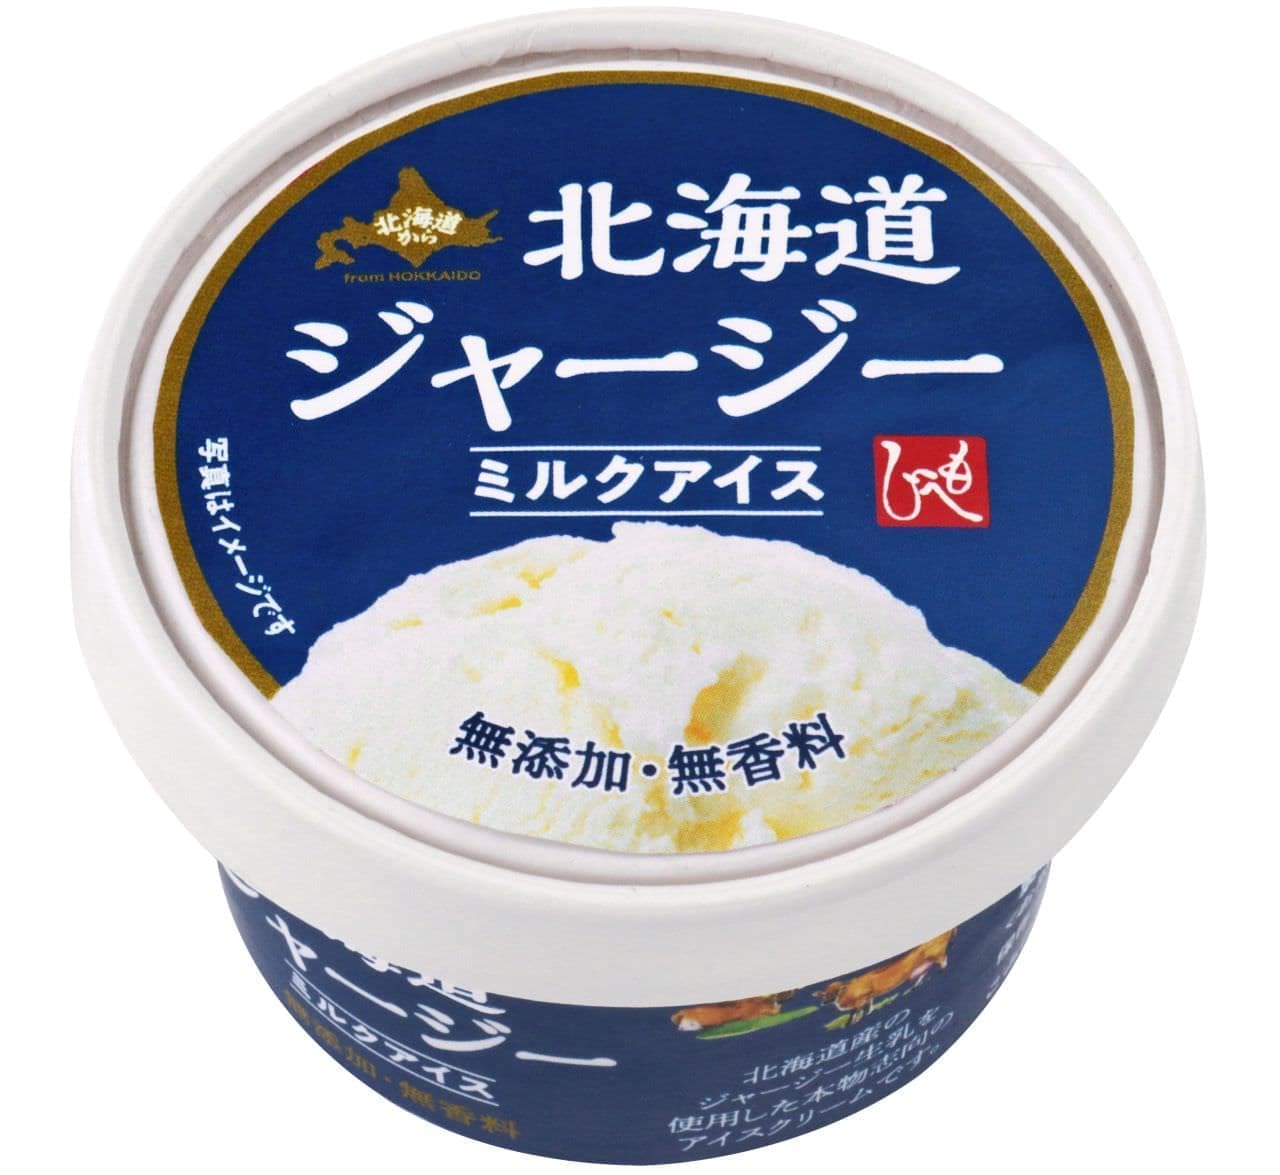 カルディ「もへじ北海道から 北海道ジャージーミルクアイス」